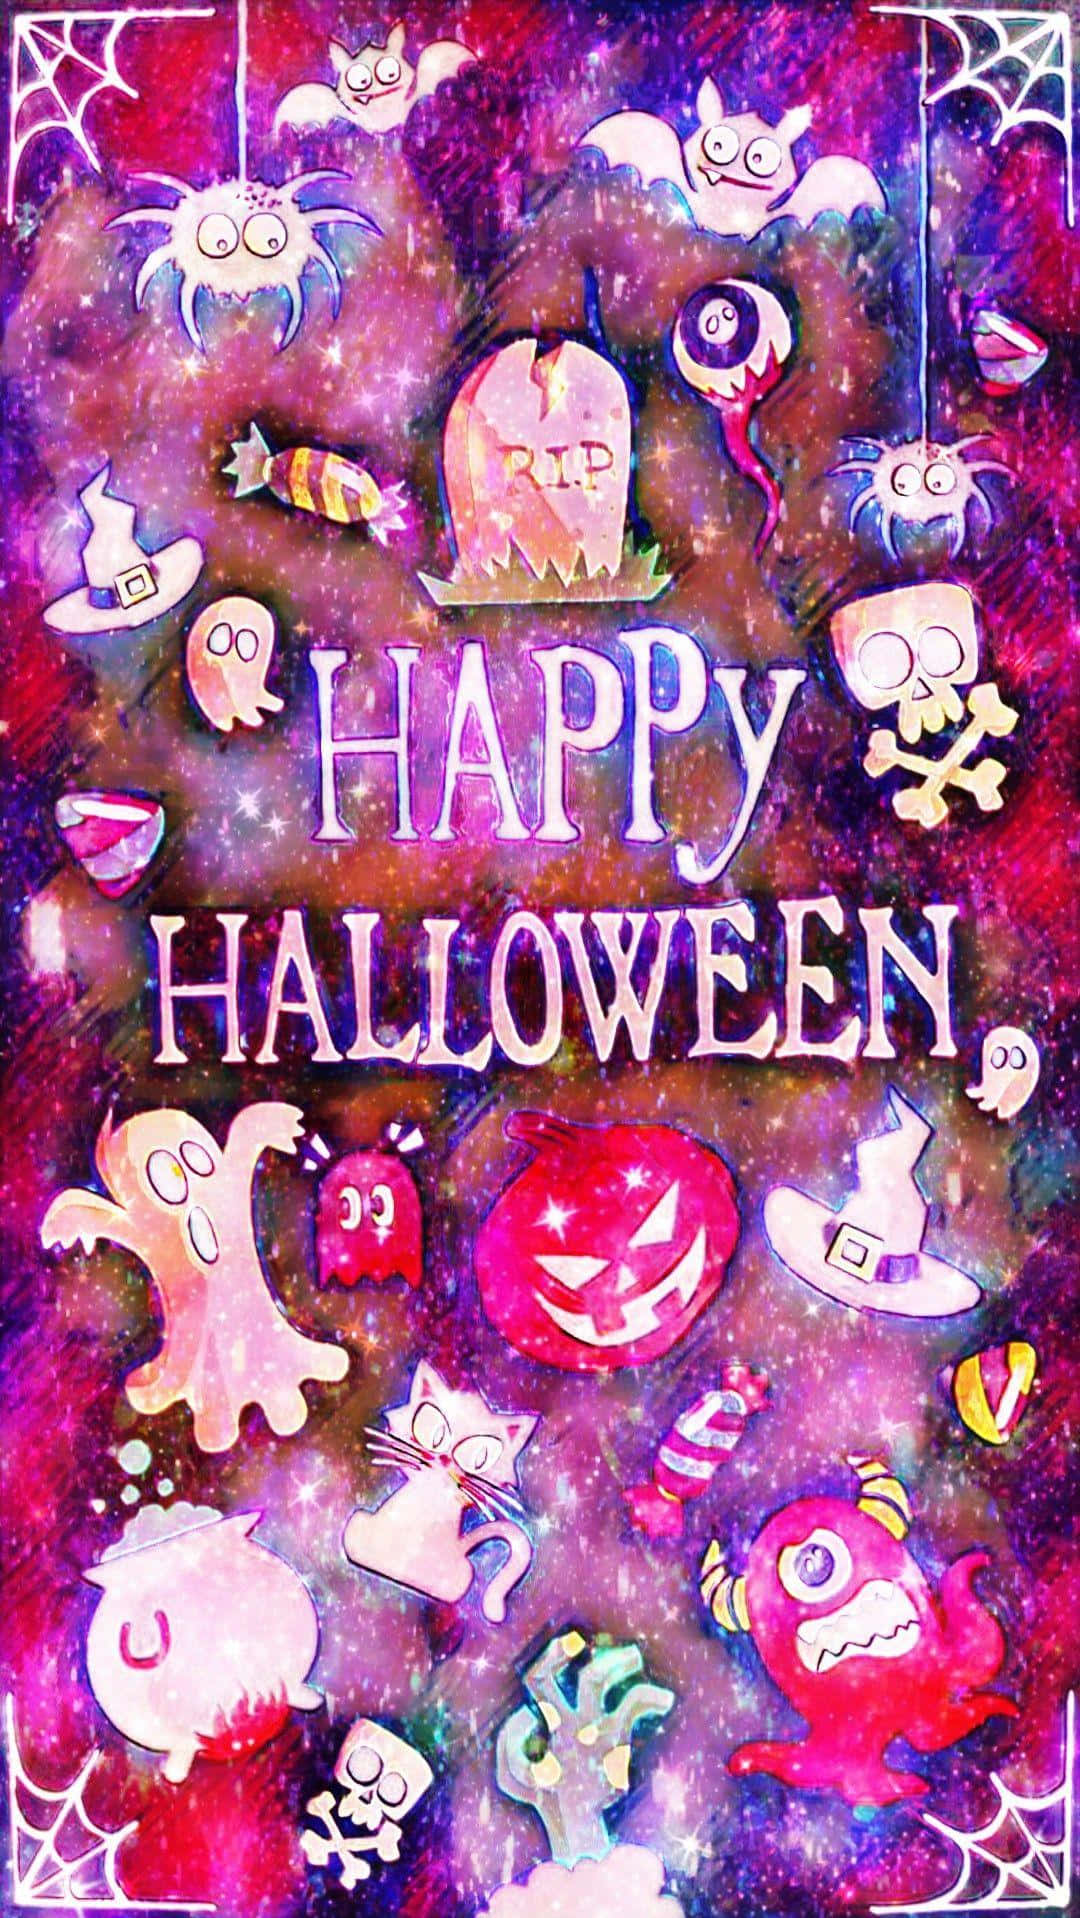 Feiernsie Ein Schaurig-lila Halloween! Wallpaper